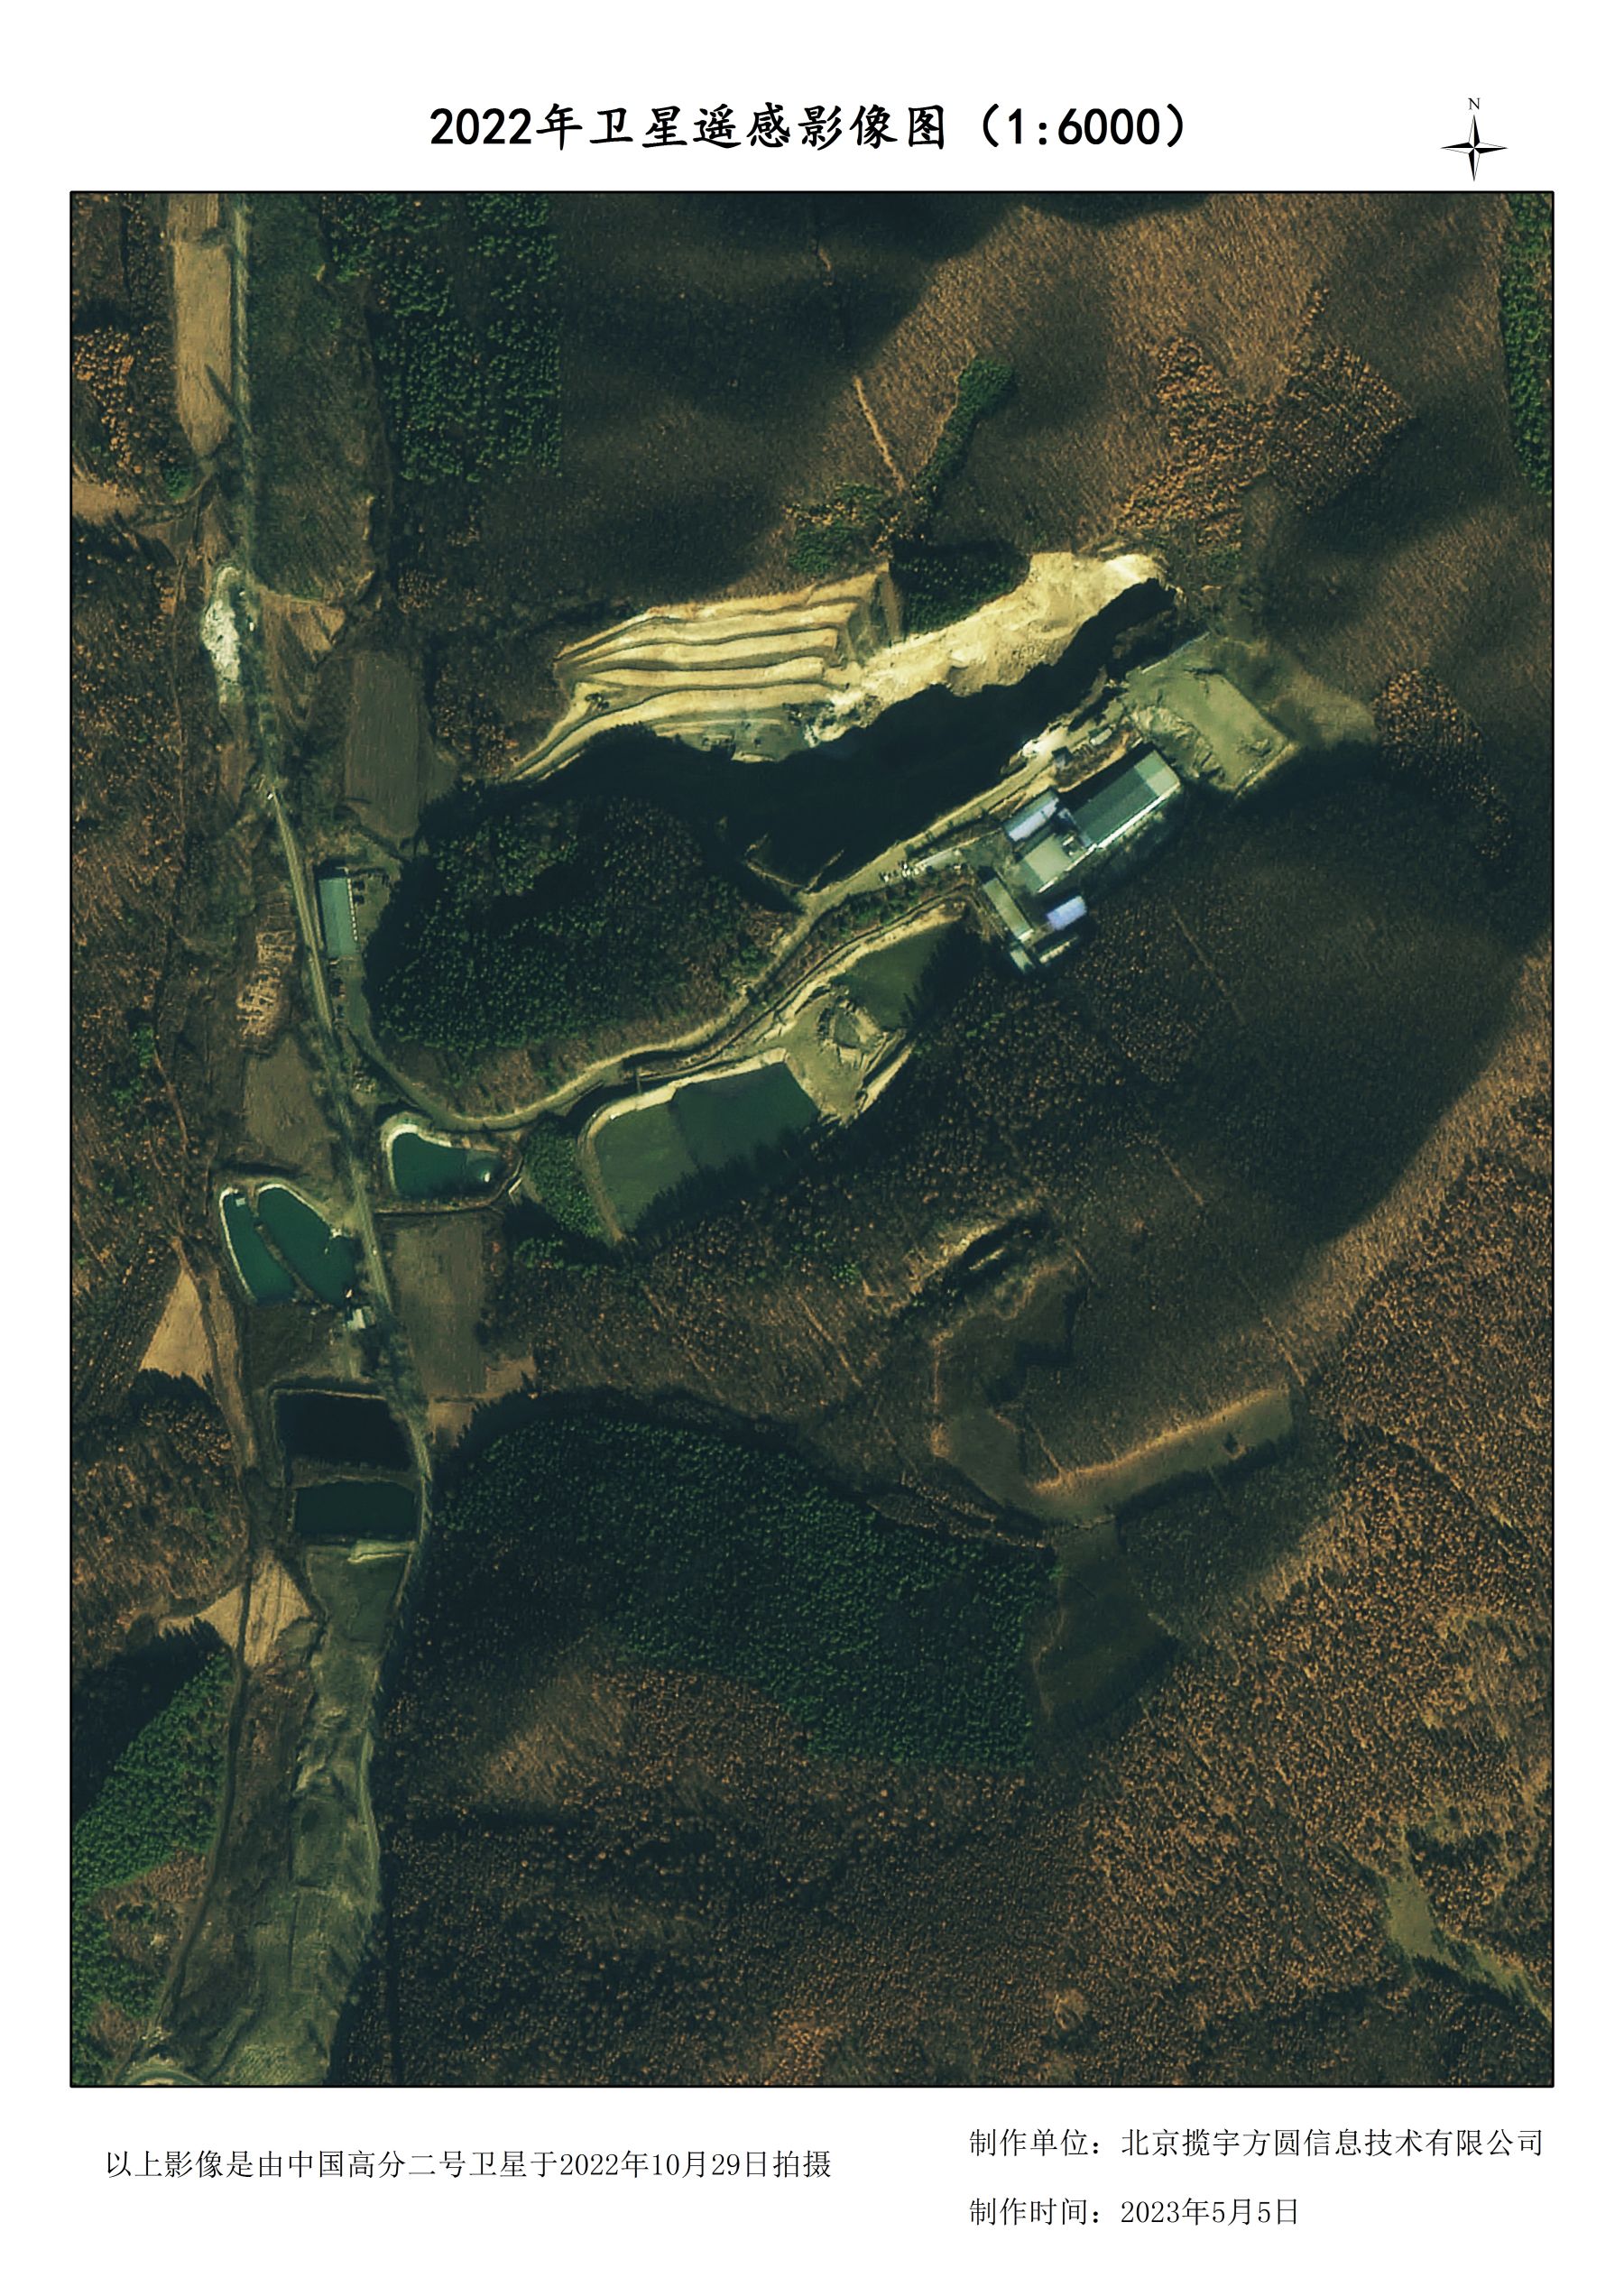 高分二号0.8米分辨率在同一矿区卫星拍摄影像样例